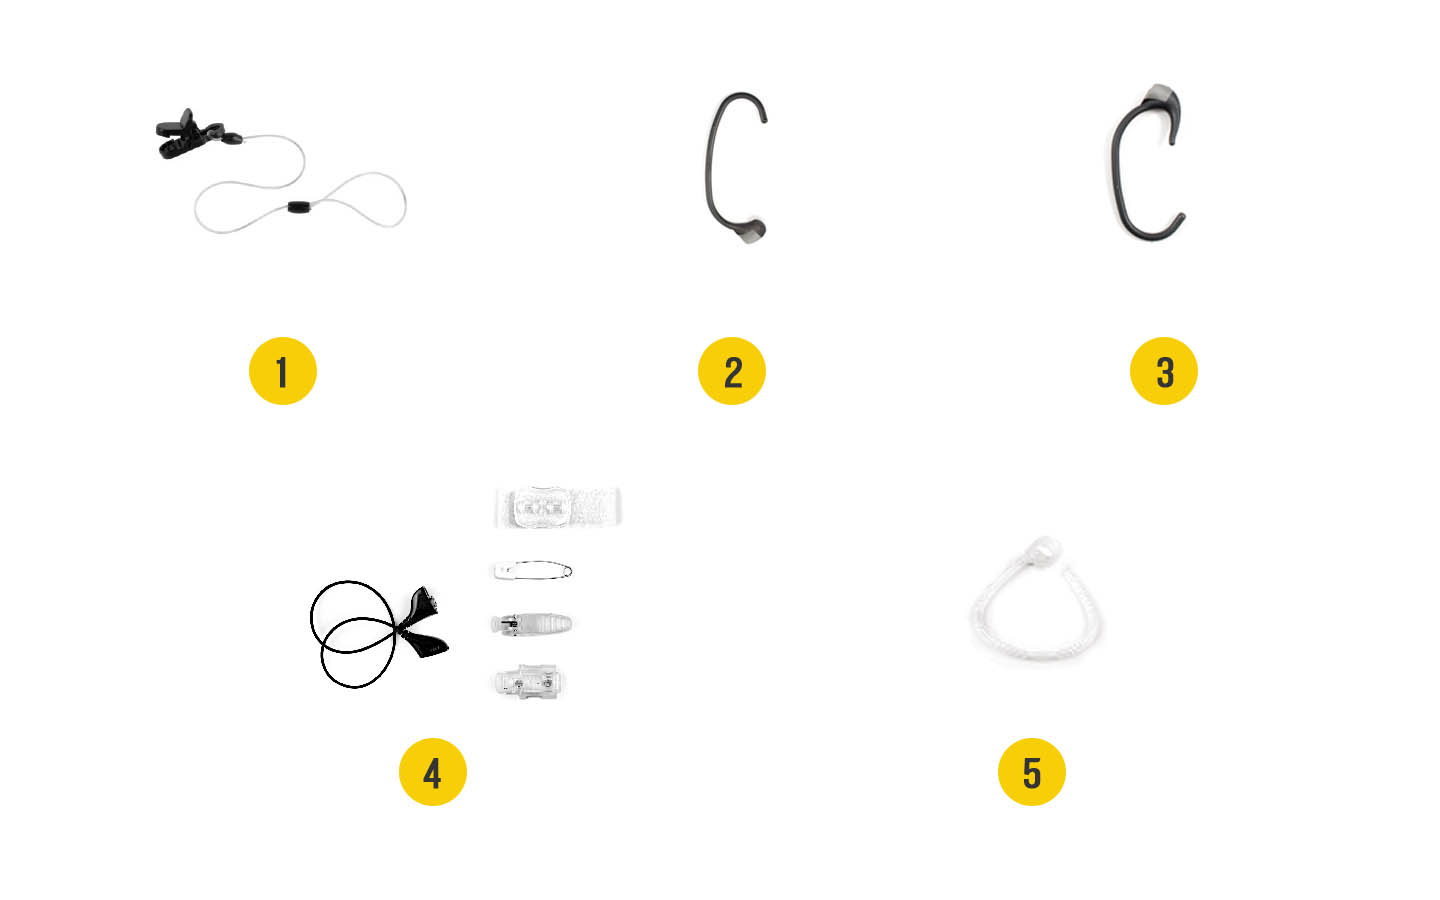 صورة الملحقات لمعالج الصوت Baha: 1. مشبك للتثبيت بخيط سلامة طويل، 2. خطاف الأذن+، 3. Snugfit‏، 4. Litewear‏، 5. Mic Lock